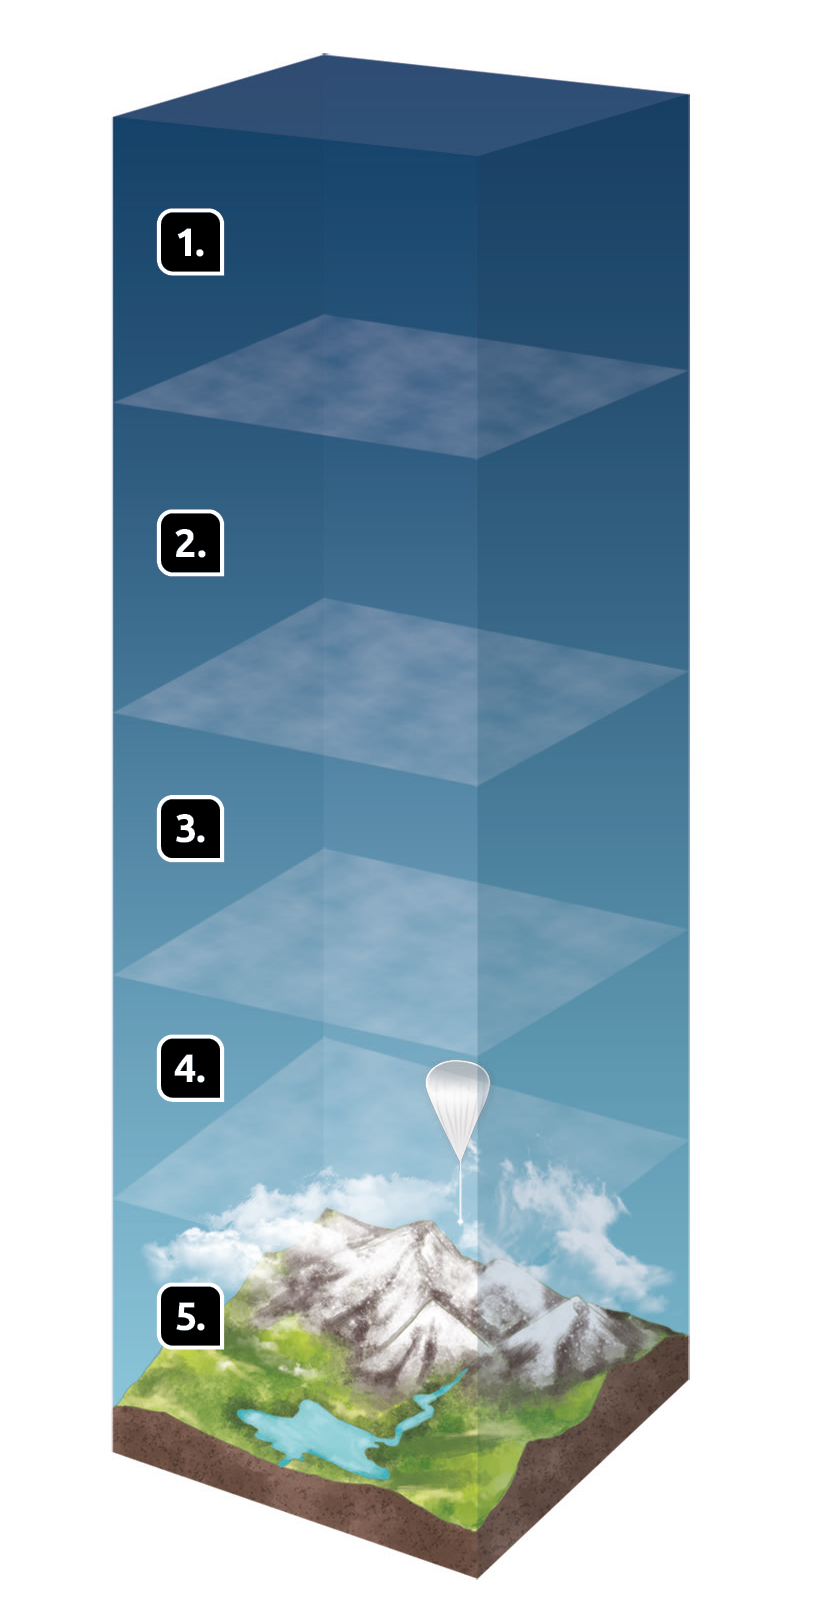 Esquema mostrando cinco camadas da atmosfera, na camada 4, há um balão no céu, na camada 5, mais próxima de superfície, há montanhas com o curso de um rio e nuvens.